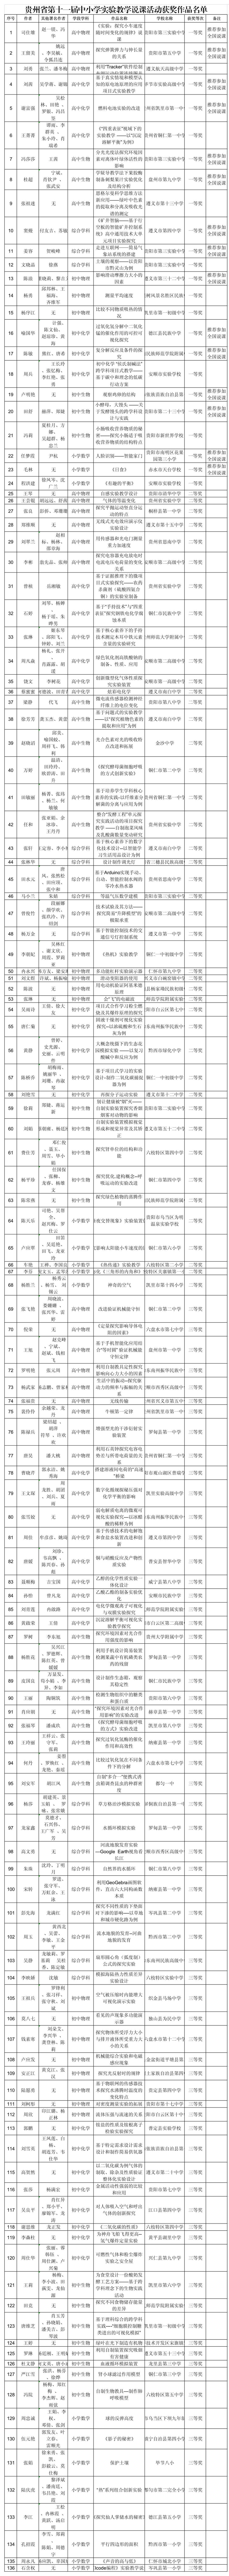 有你的学校吗? 贵州省第十一届中小学实验教学说课活动获奖作品名单公布